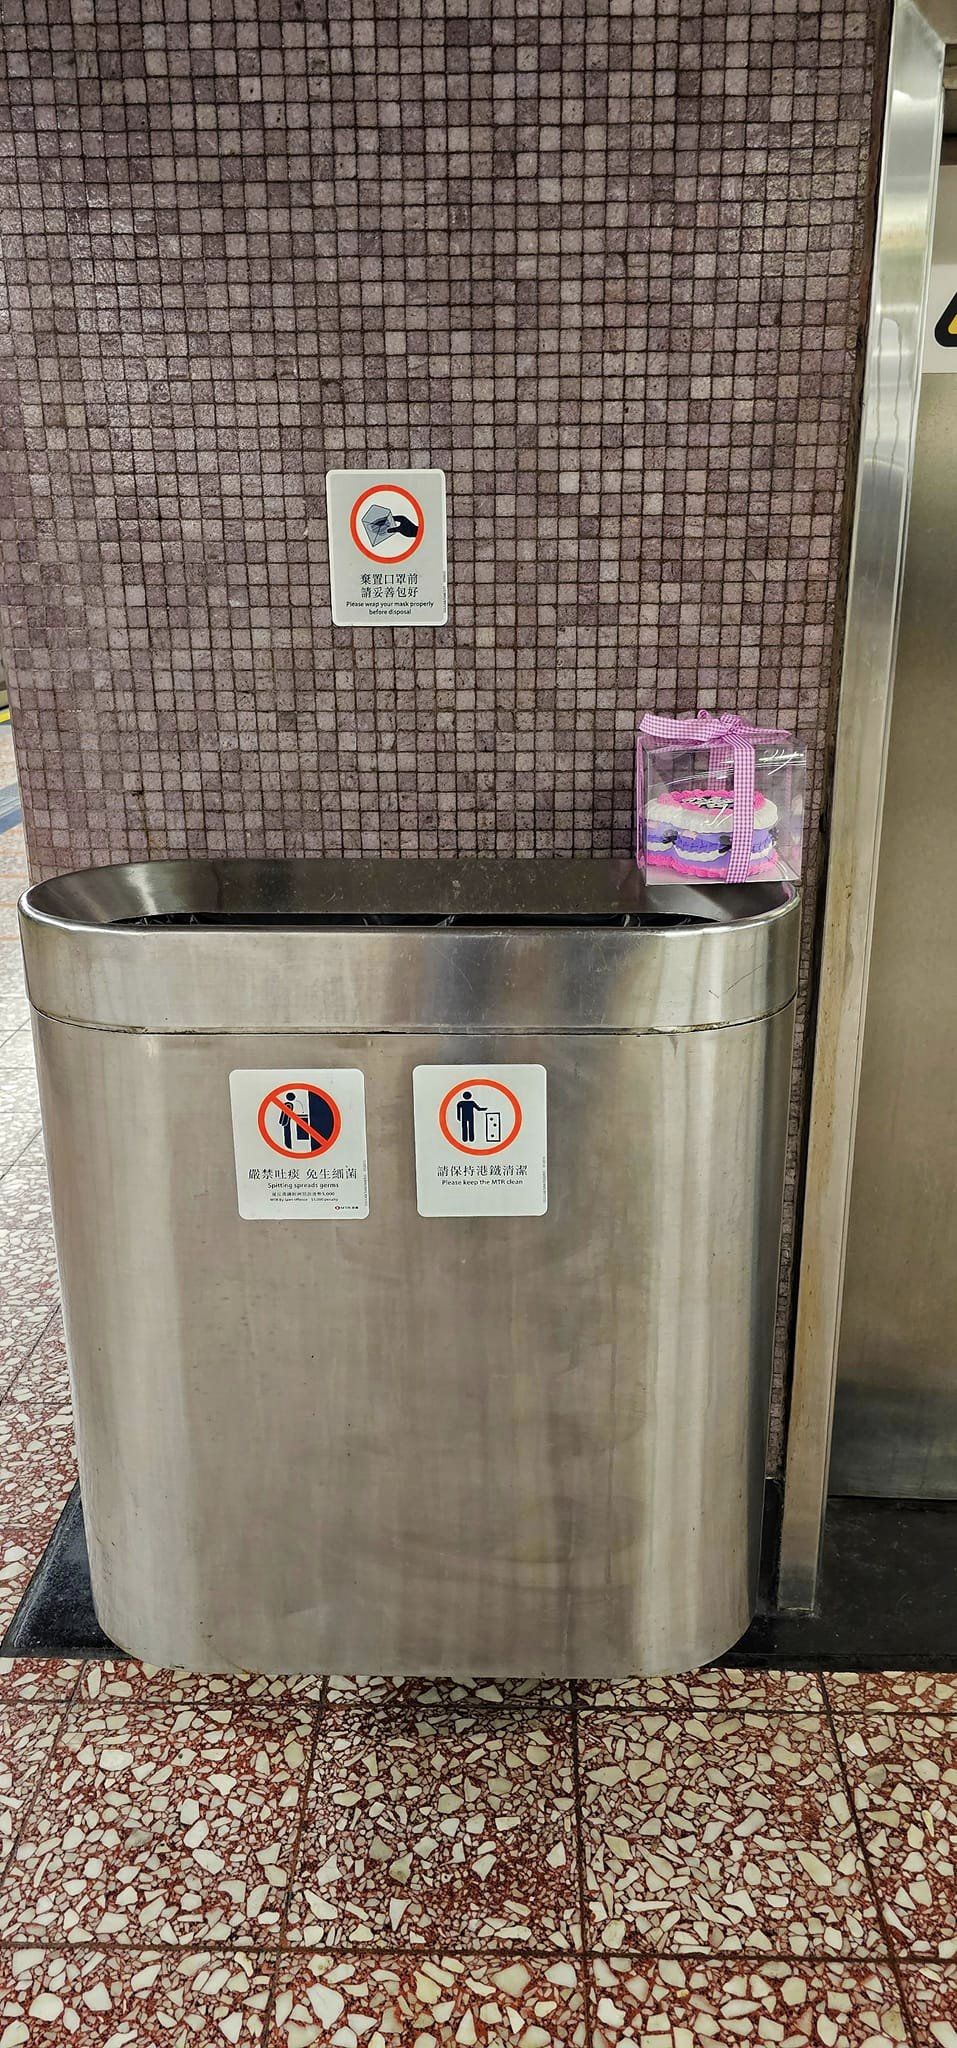 网上流传一个写有「Ying」字的紫色蛋糕，被弃于港铁月台垃圾桶边缘的相片。网图